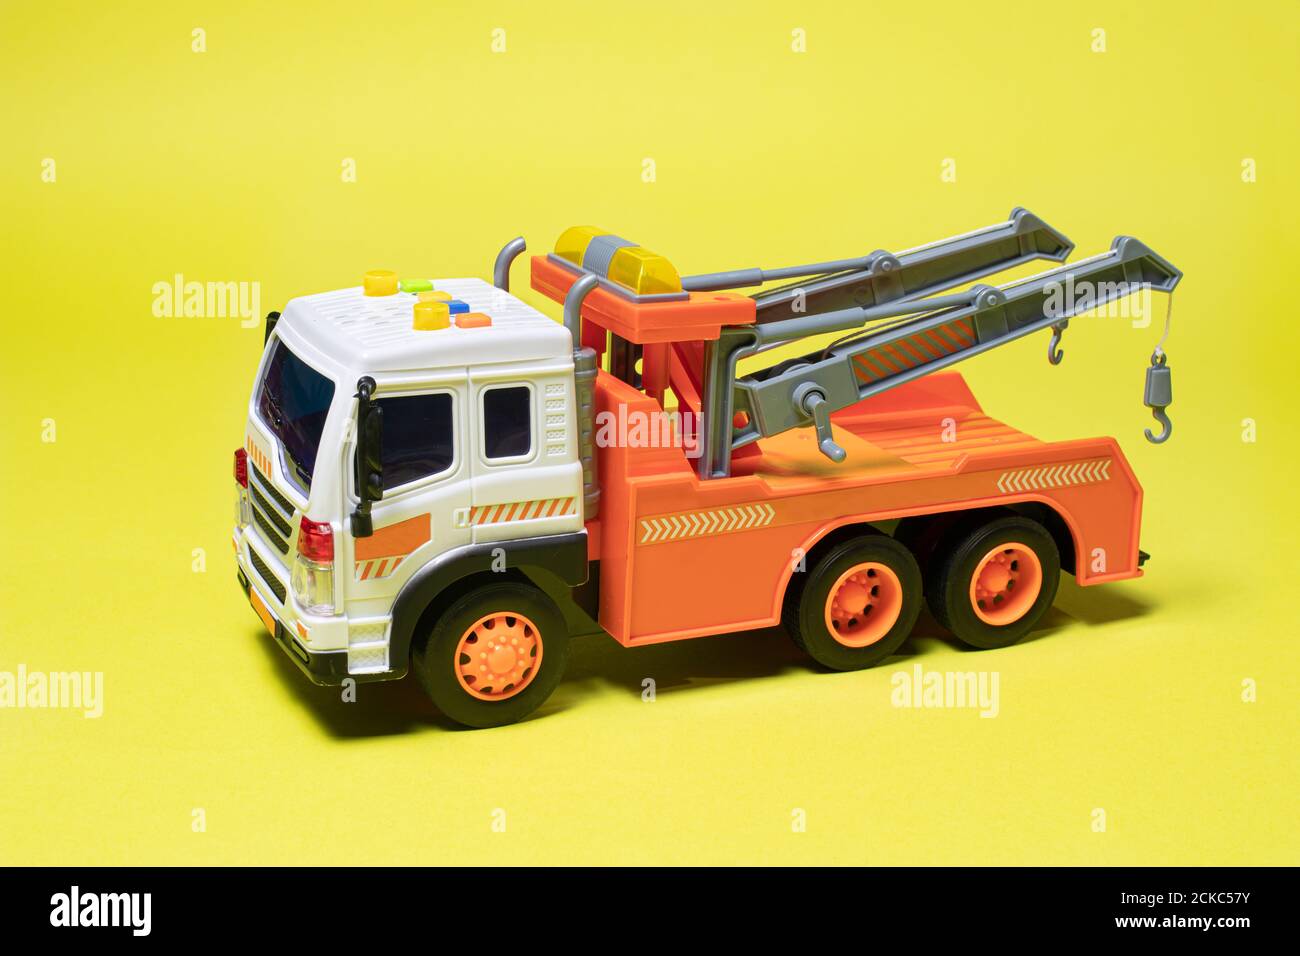 Spielzeug orange Abschleppwagen auf gelbem Hintergrund Banner mit Platz für Text. Kinderwagen zum Verladen und Transportieren von Autos Stockfoto